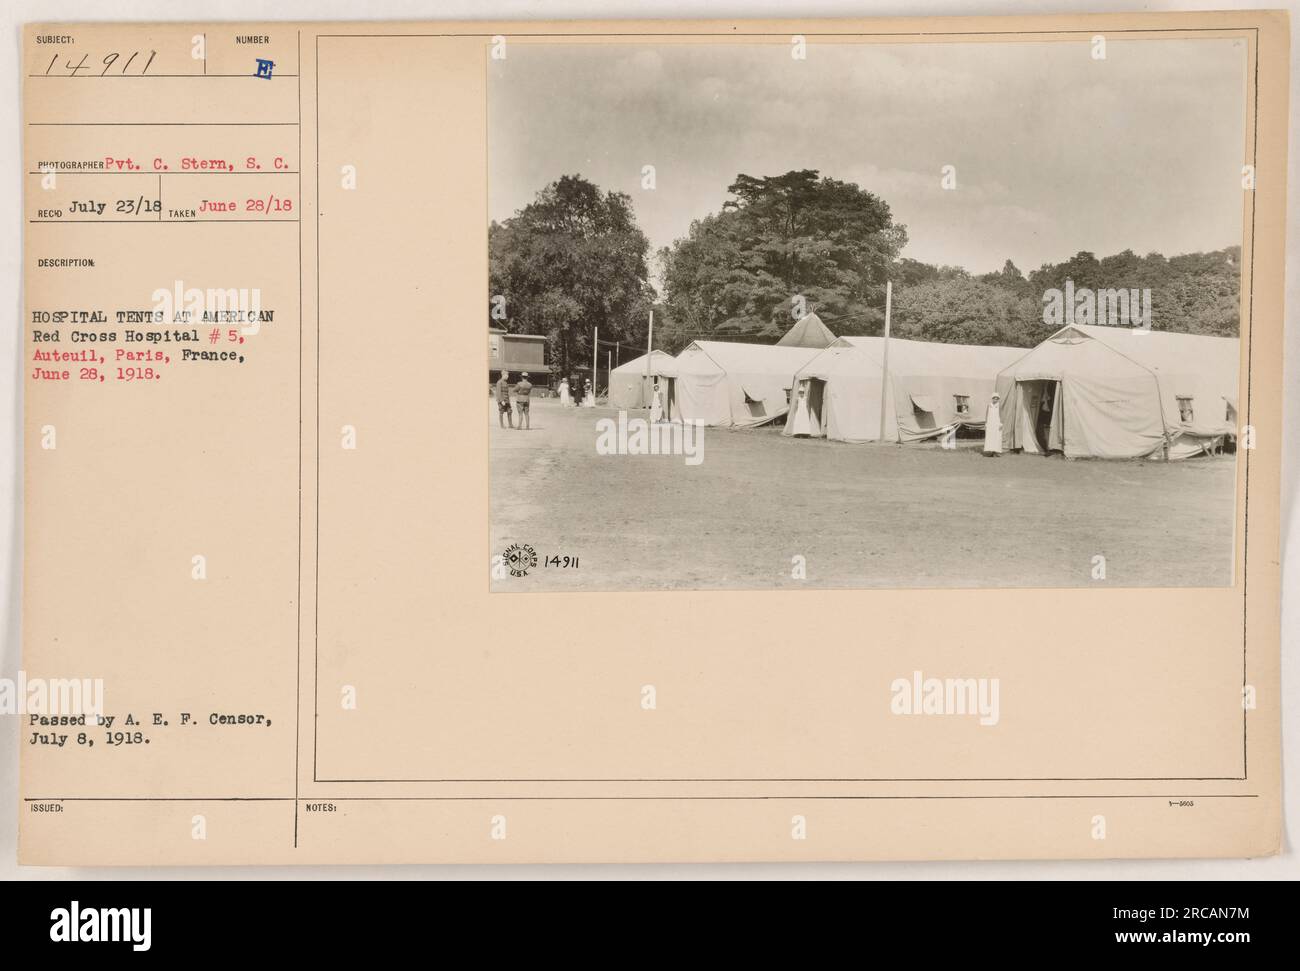 Krankenhauszelte im American Red Cross Hospital #5 in Auteuil, Paris, Frankreich. Das Foto wurde am 28. Juni 1918 von Pvt. C. Stern, S.C. aufgenommen Es wurde am 8. Juli 1918 nach Genehmigung durch den A.E.F. Censor veröffentlicht. Die Beschreibungsnummer lautet 14911. Stockfoto